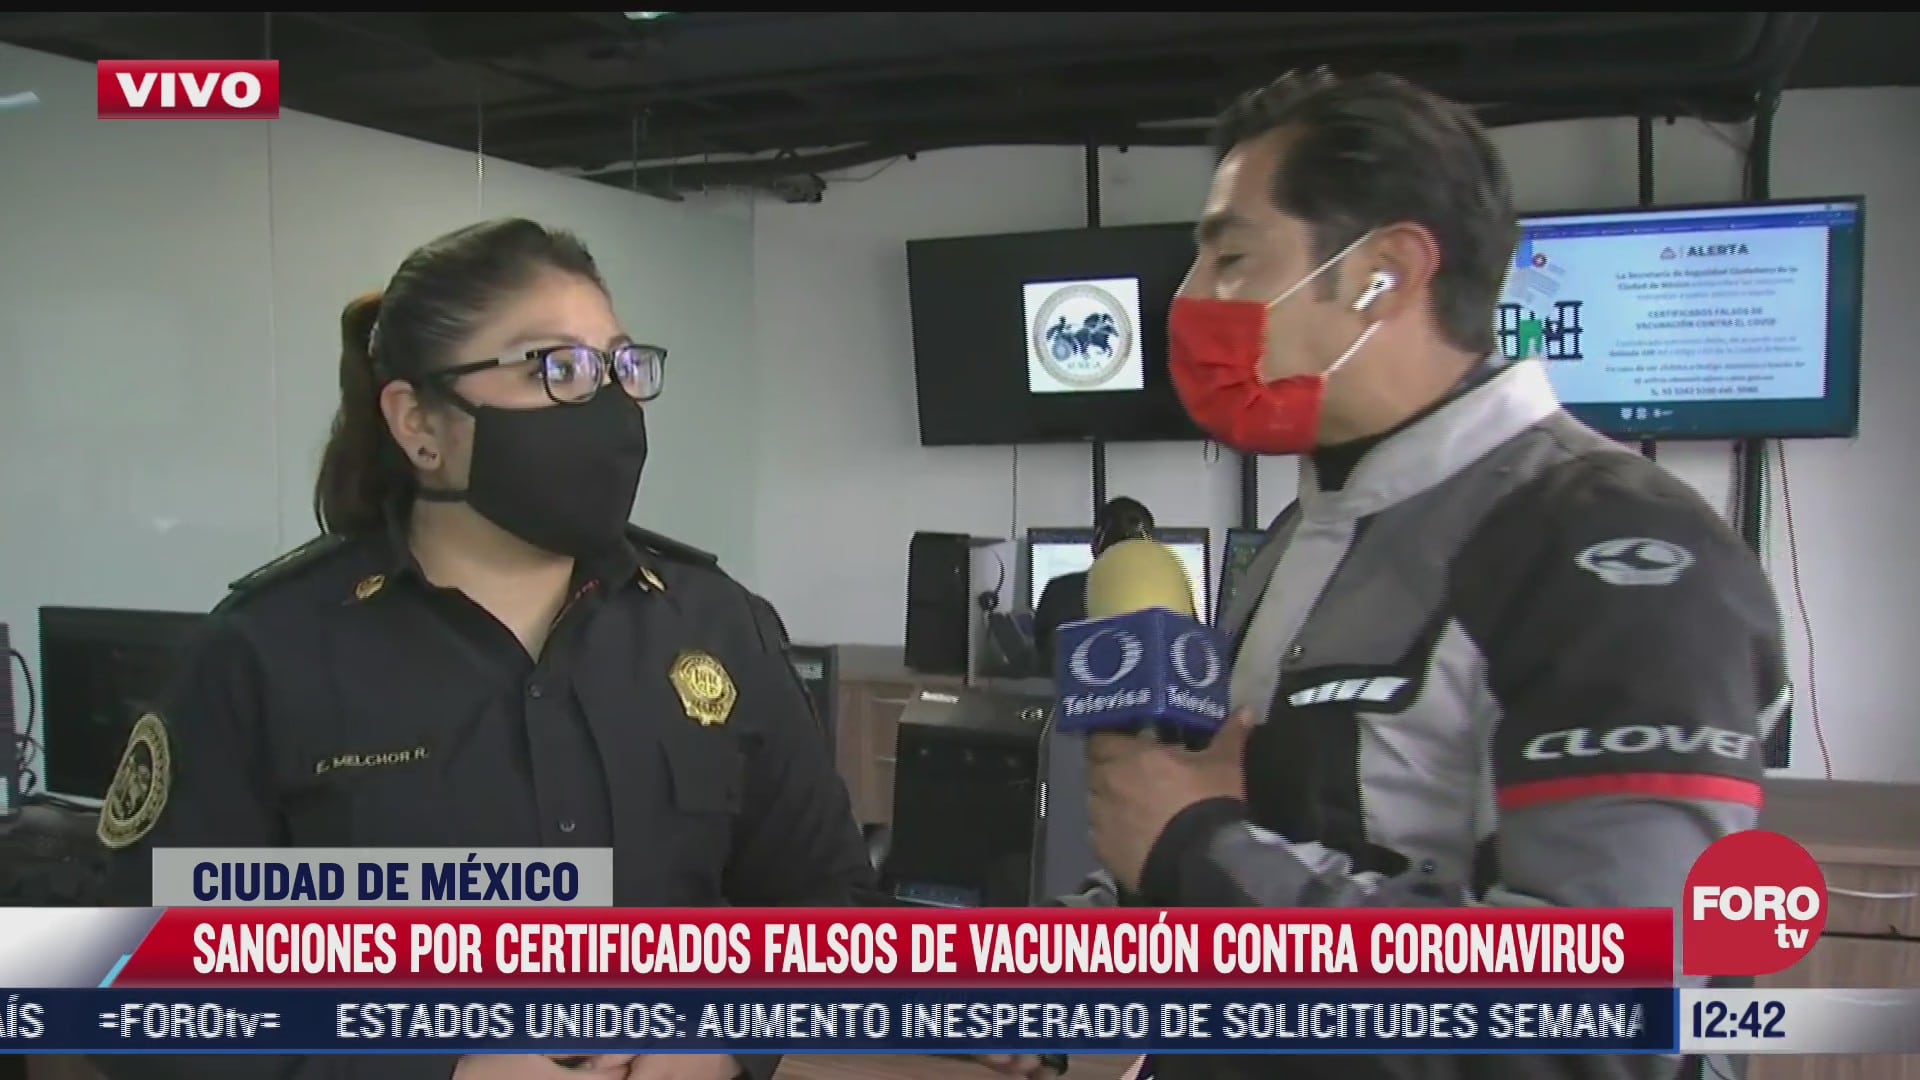 policia cibernetica alerta sobre robo de identidad a traves de certificado falso de vacunacion